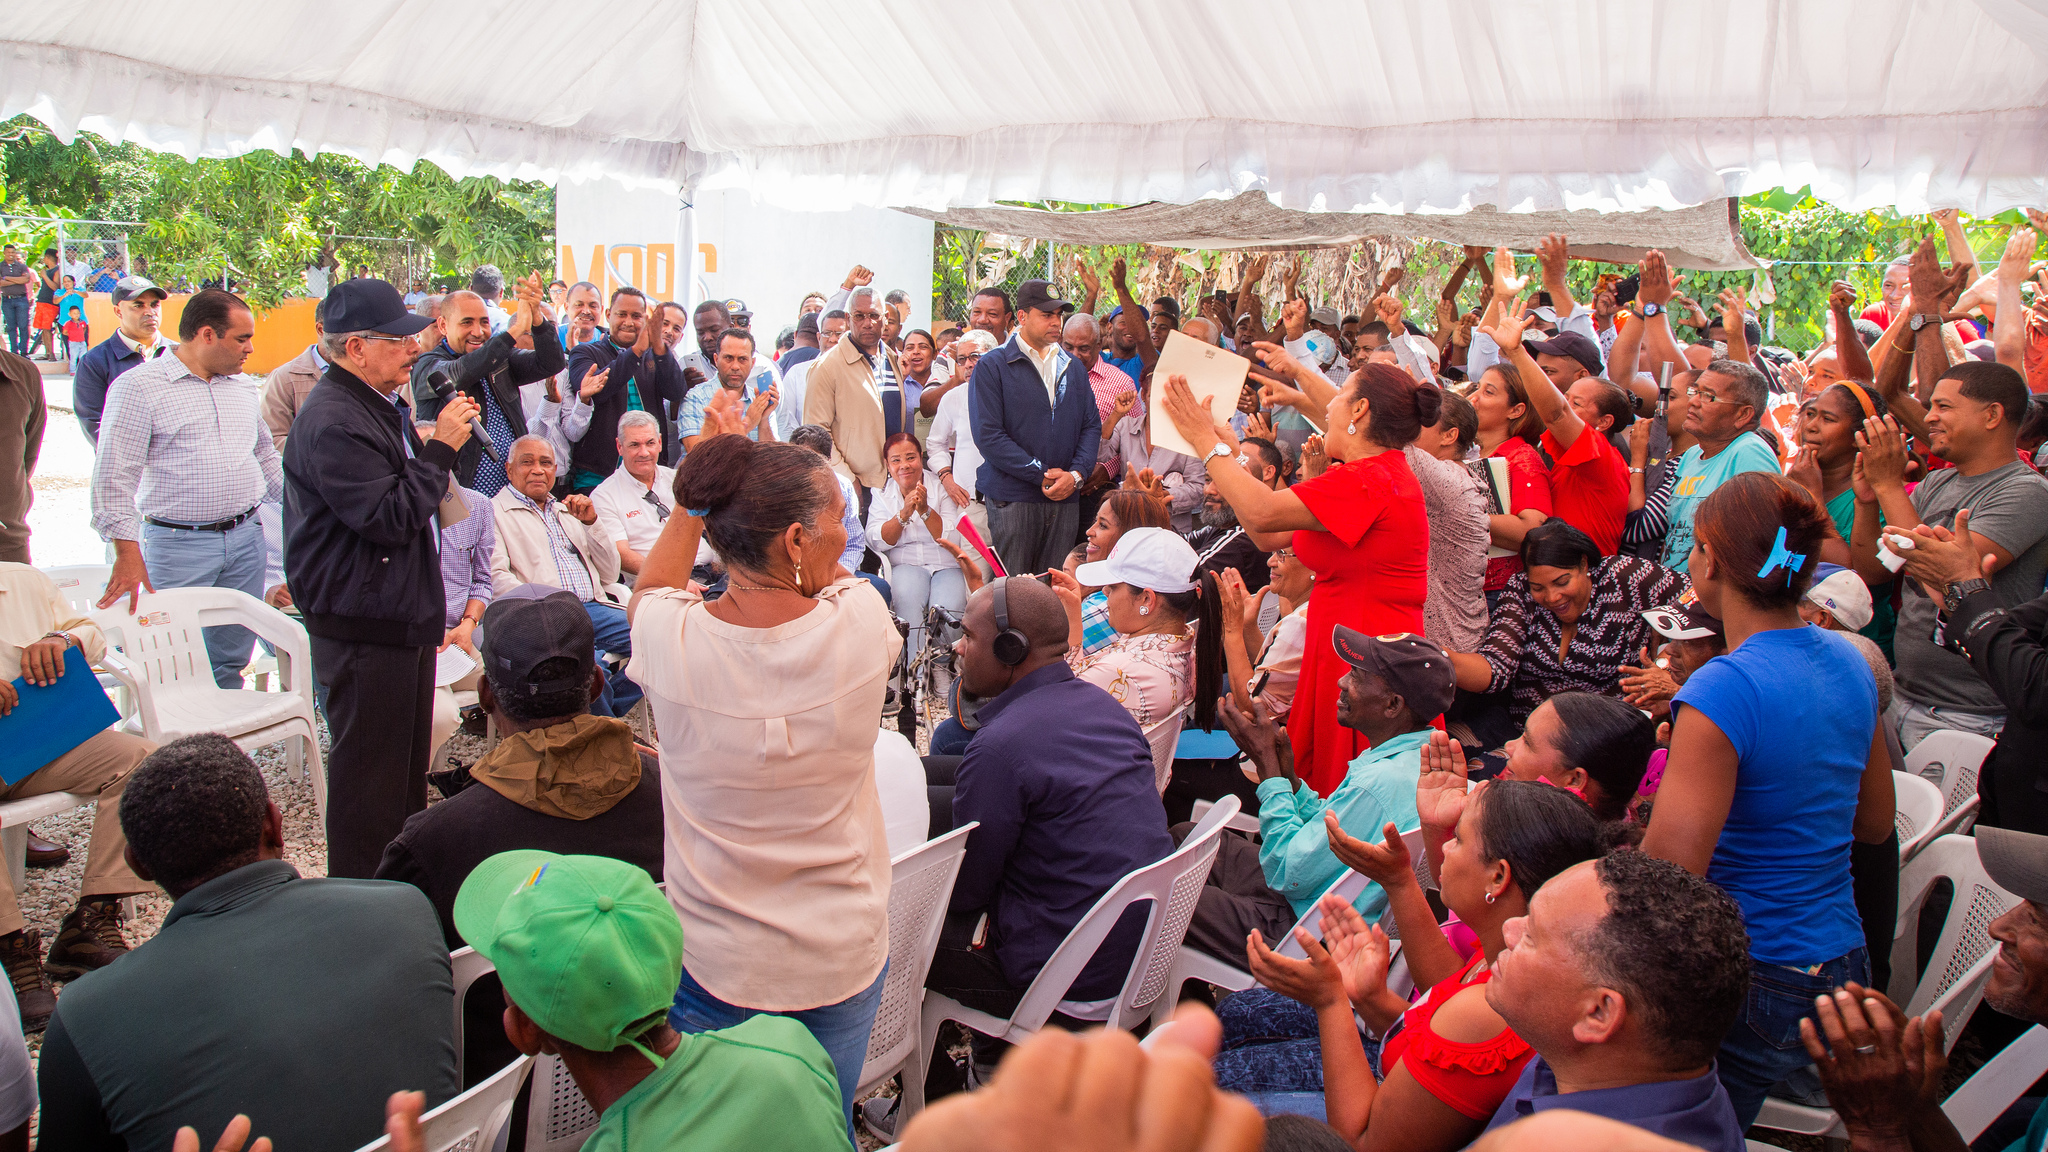 REPÚBLICA DOMINICANA: Visita Sorpresa de Danilo Medina reactivará producción agrícola en El Peñón y Pescadería; aumentará ingresos de más de 3 mil familias